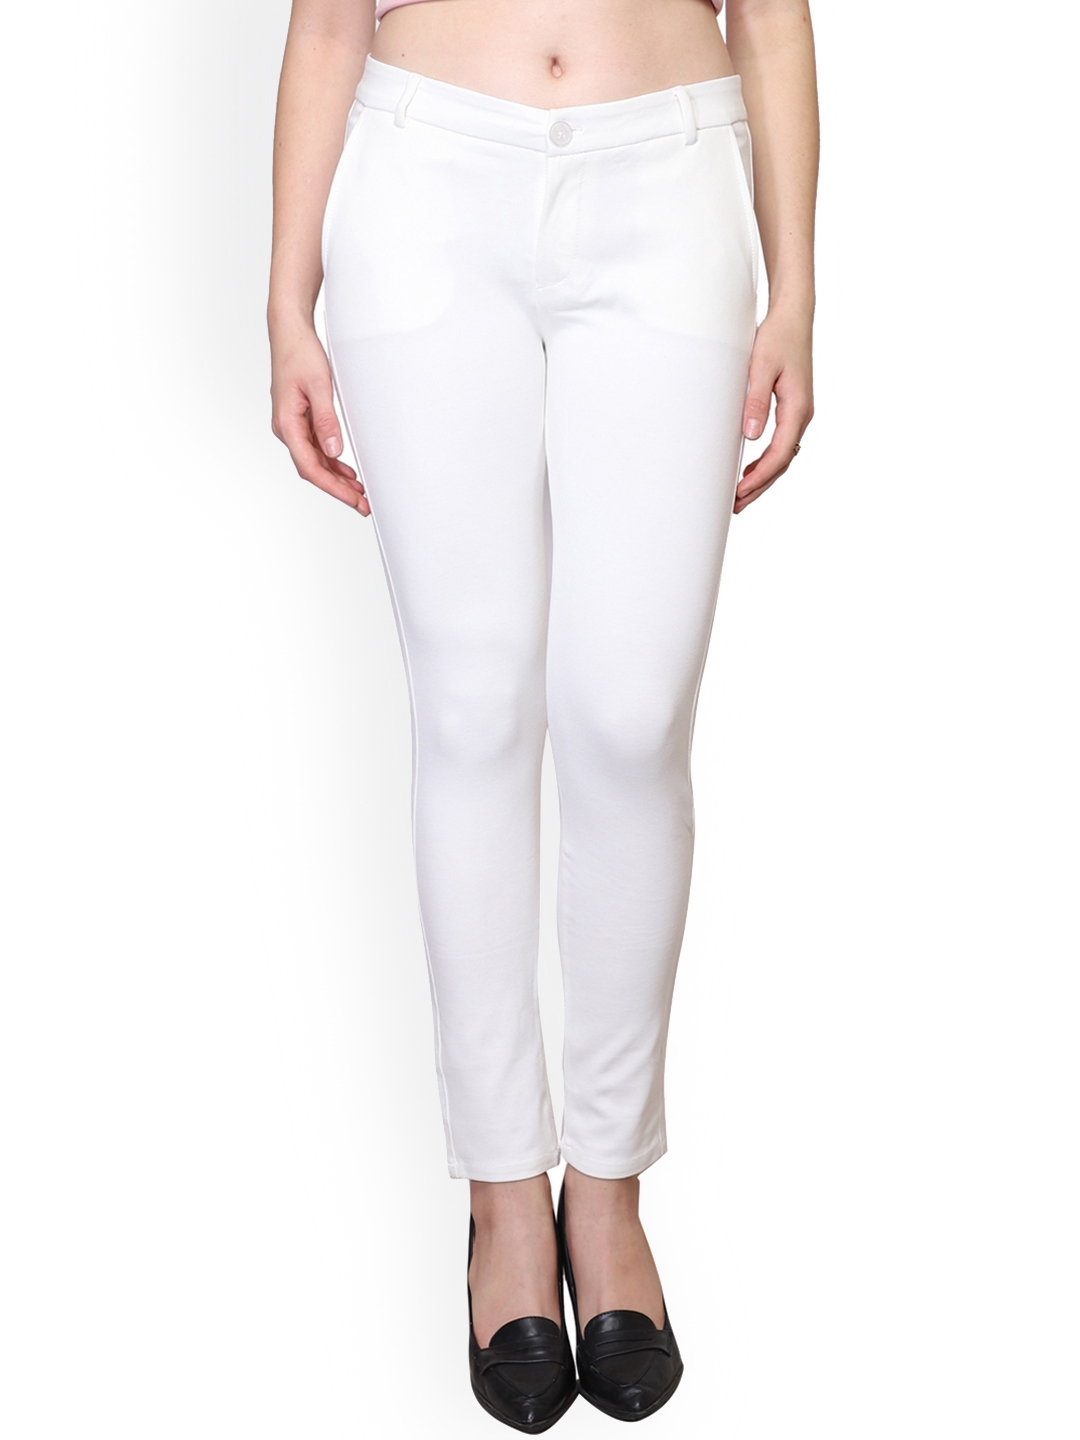 Buy White Trousers  Pants for Women by BANI WOMEN Online  Ajiocom